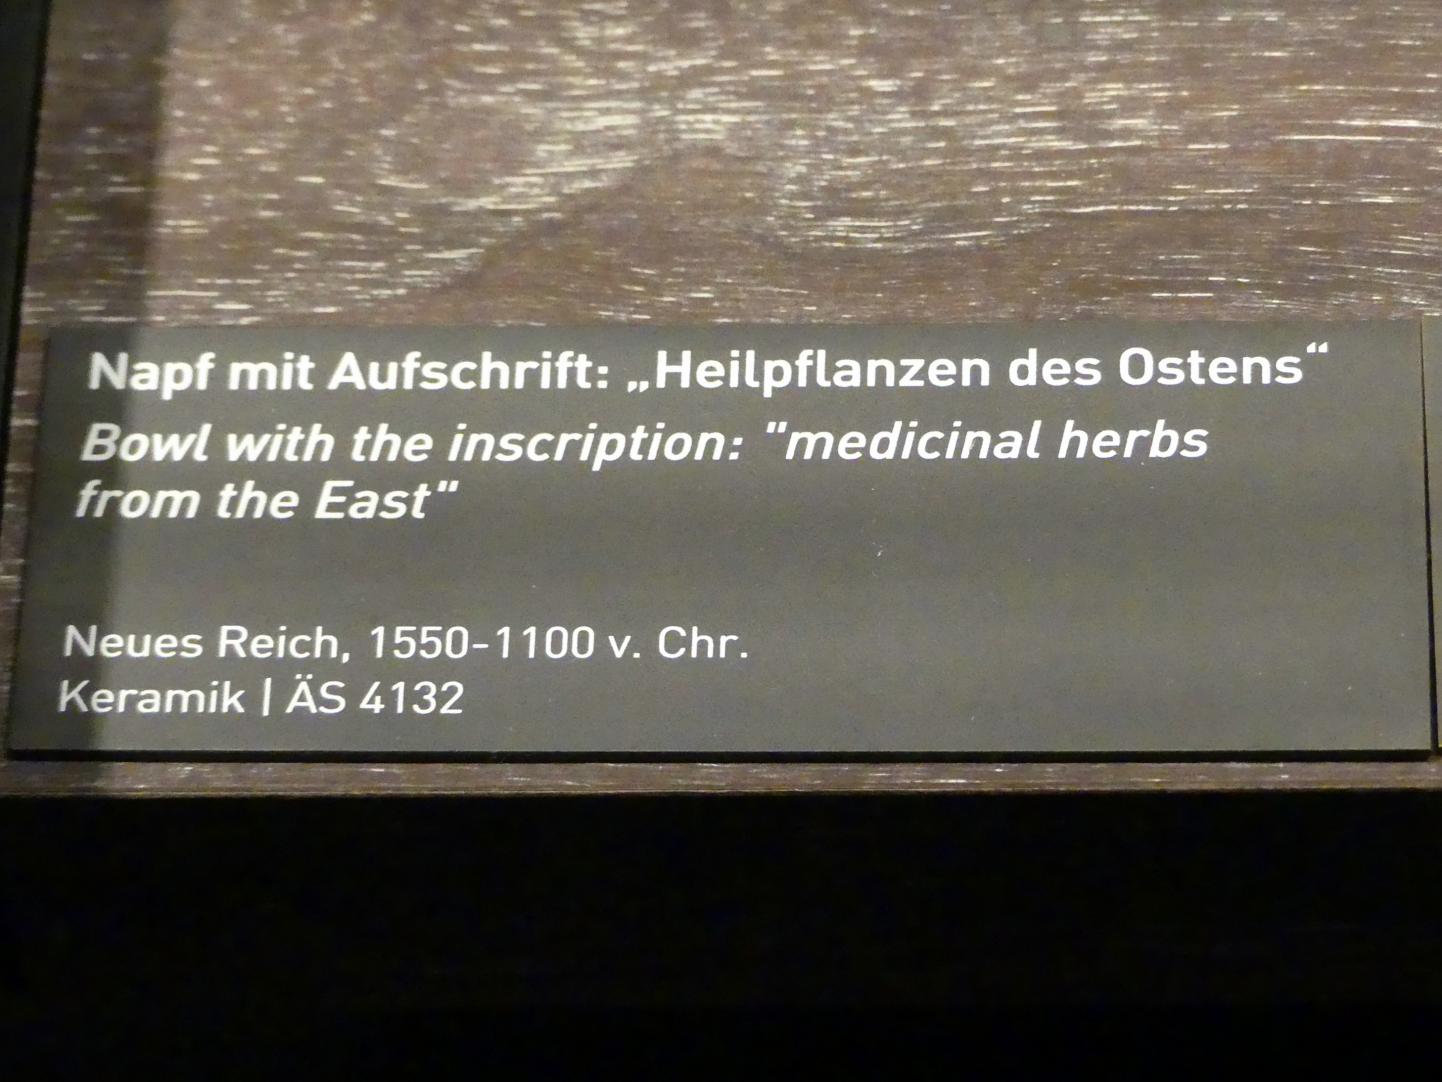 Napf mit Aufschrift "Heilpflanzen des Ostens", Neues Reich, 953 - 887 v. Chr., 1550 - 1100 v. Chr., Bild 2/2